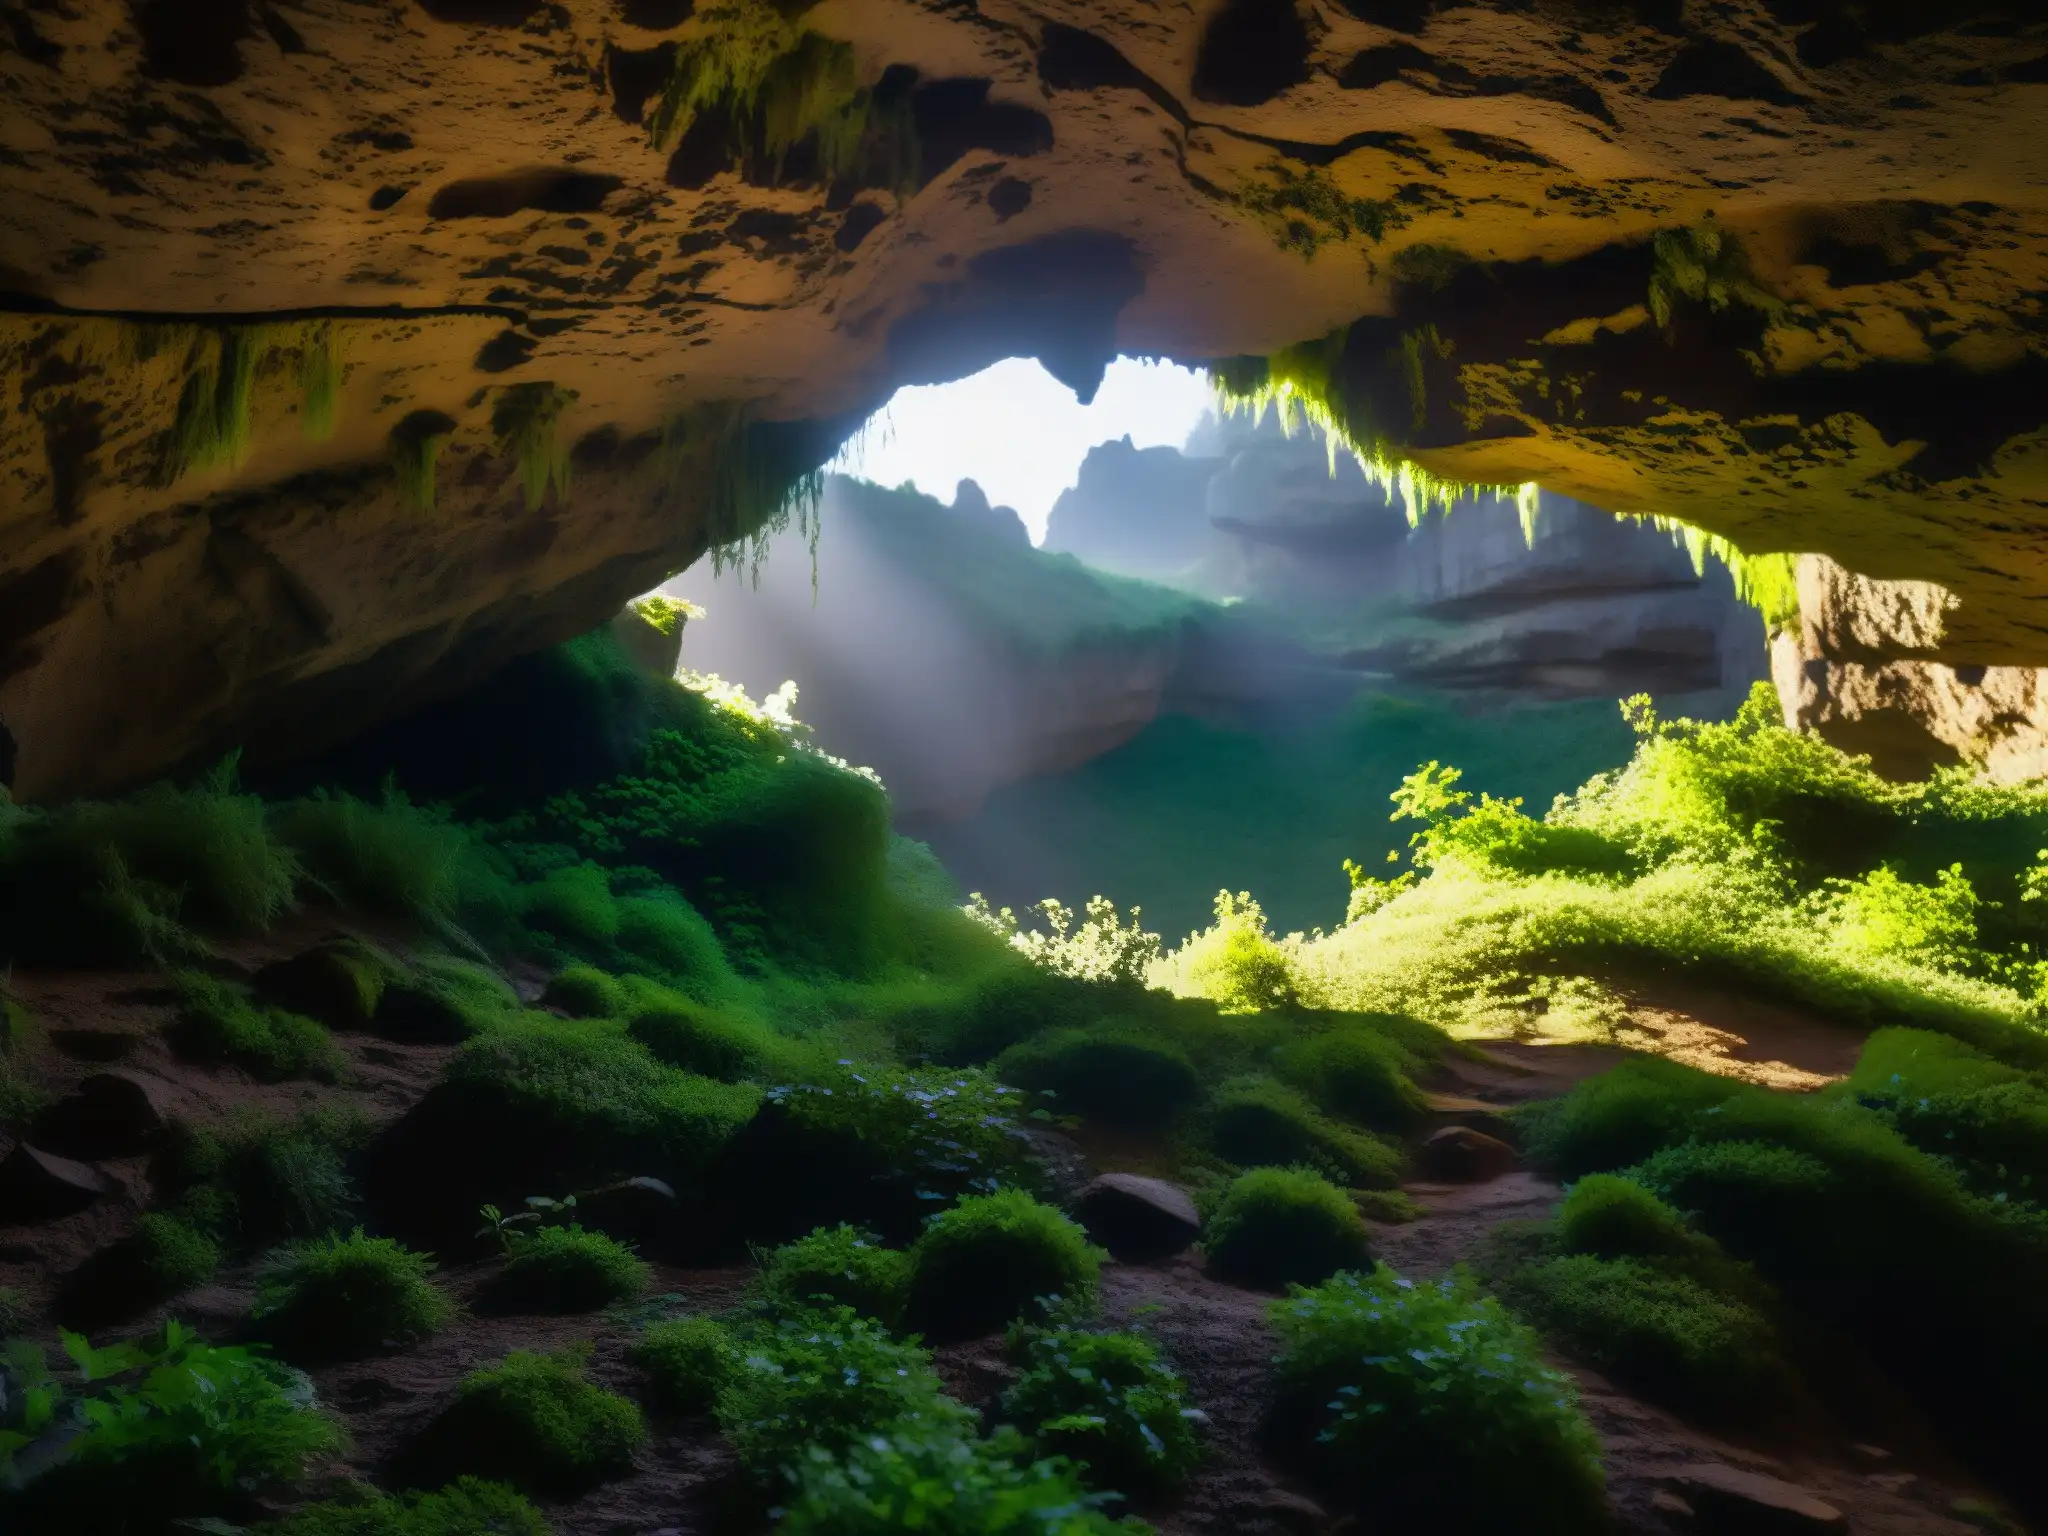 La misteriosa entrada a la cueva en Durango revela rituales y sacrificios ocultos, con sombras y luces